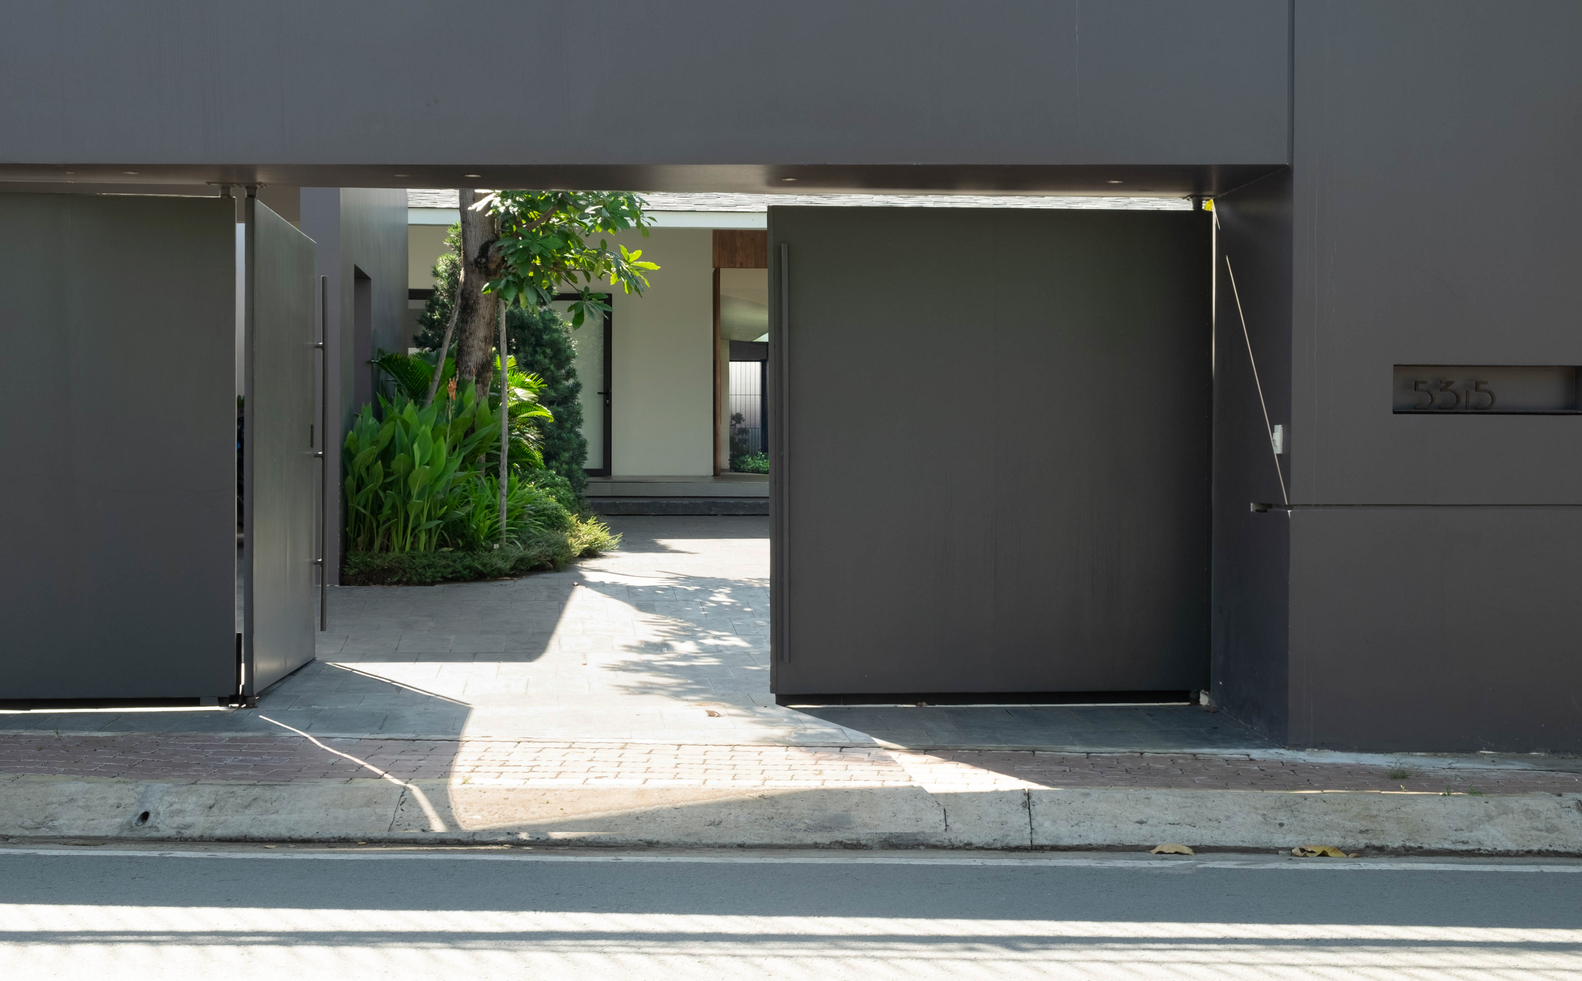 Hệ cửa dẫn lối vào nhà có thiết kế đơn giản với sắc xám thanh lịch, hiện đại.